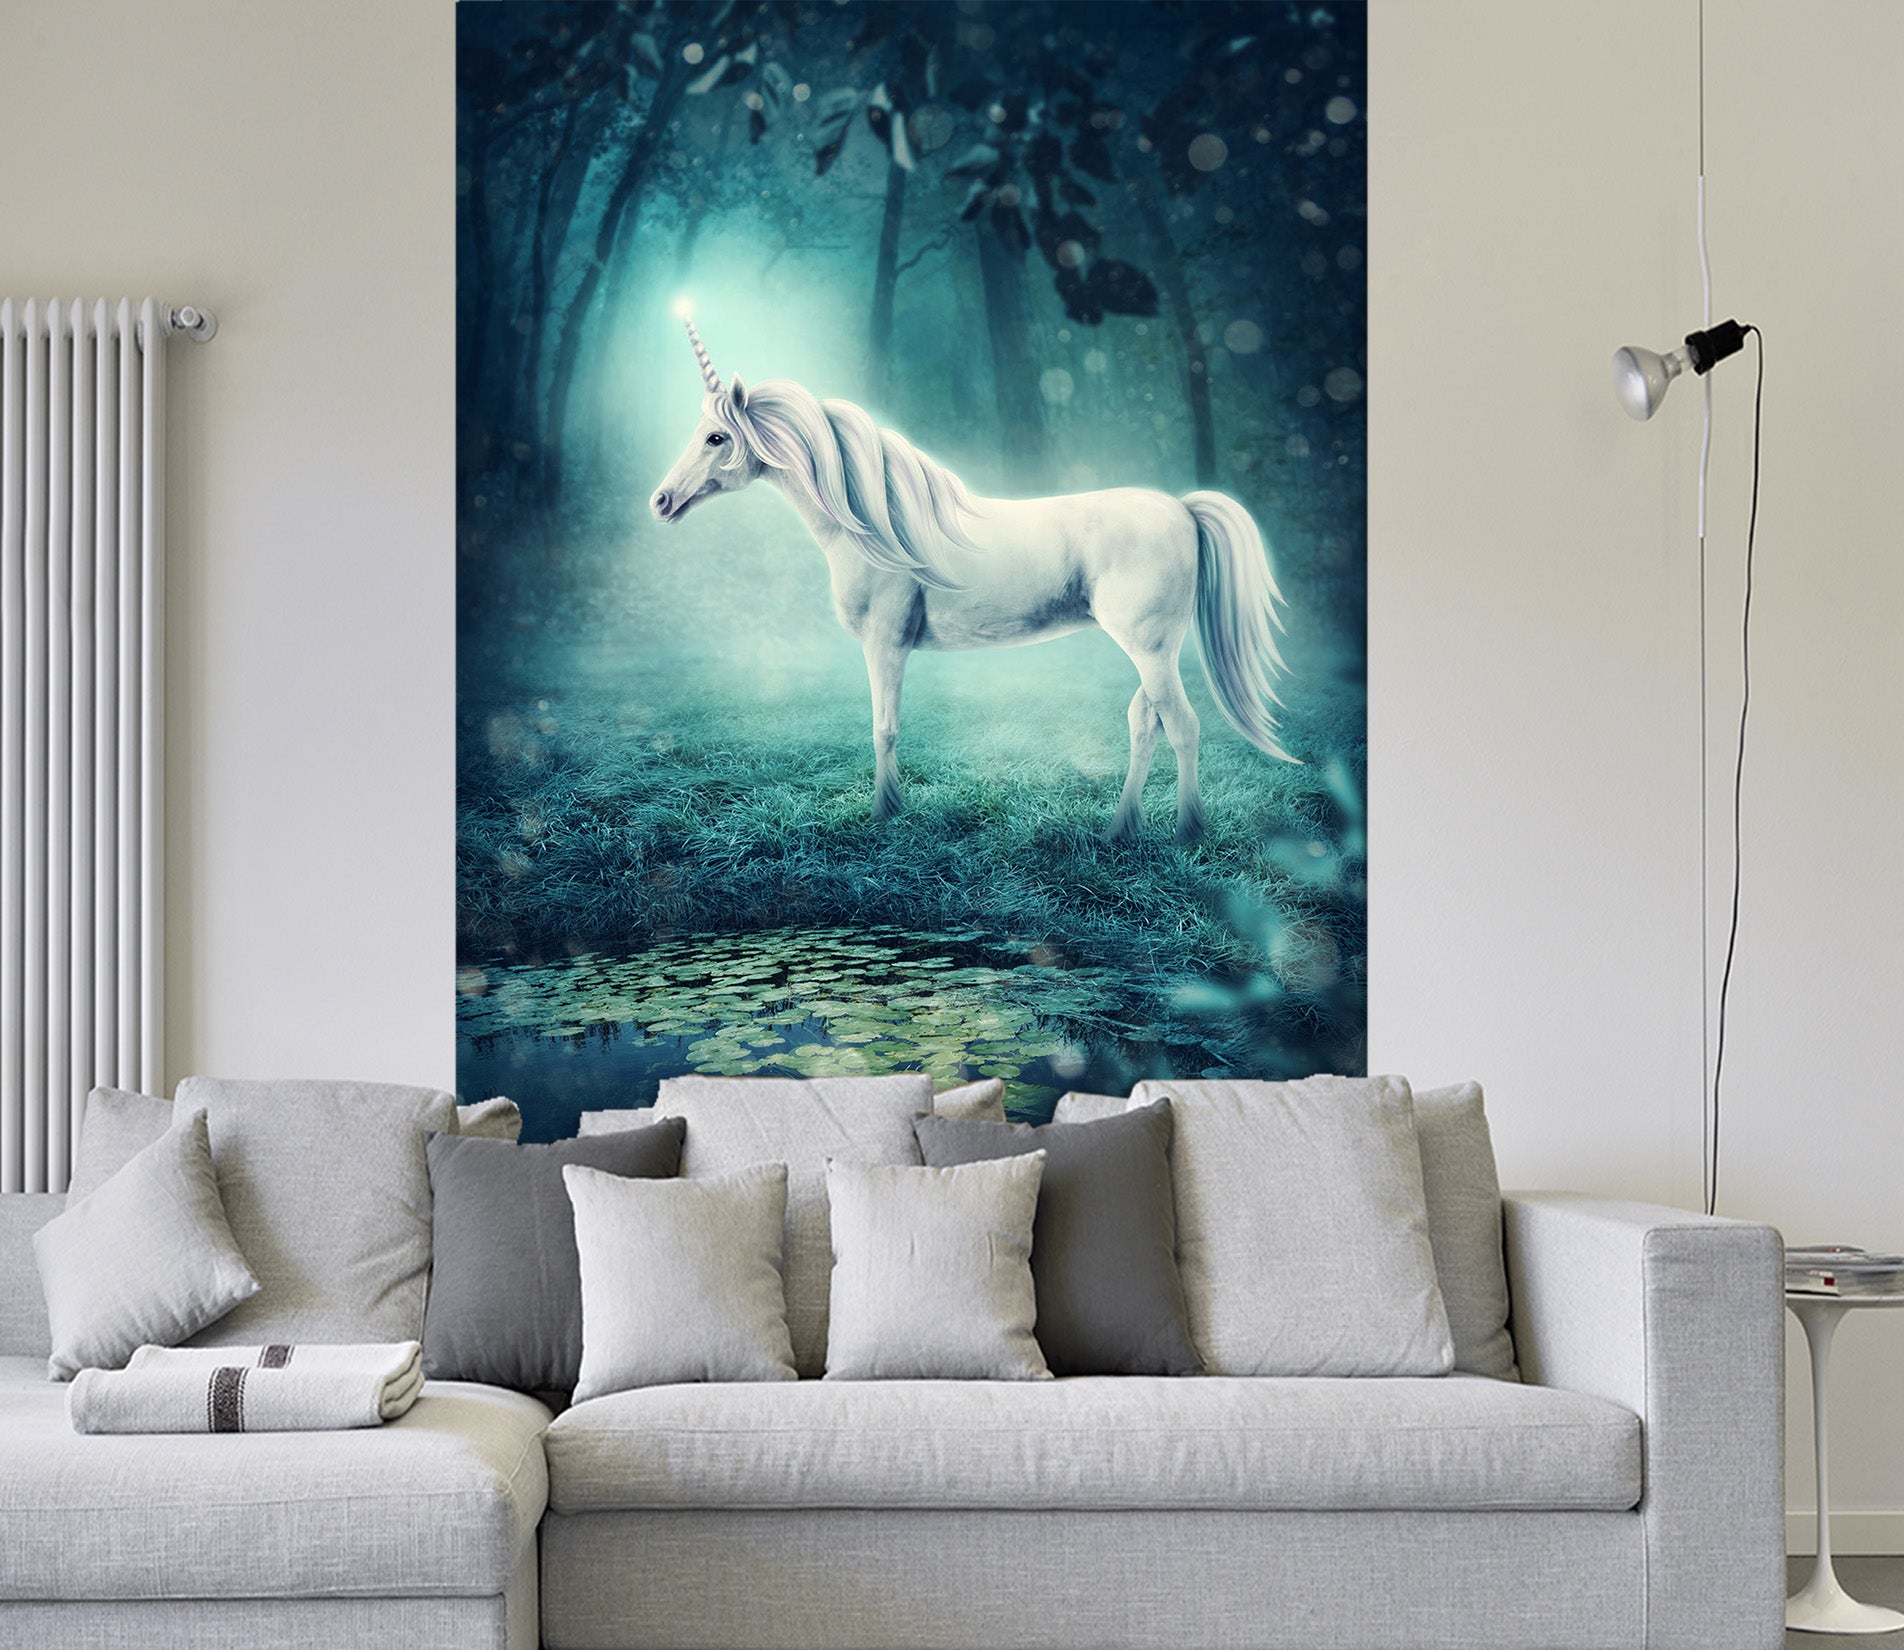 3D White Horse 1622 Wall Murals